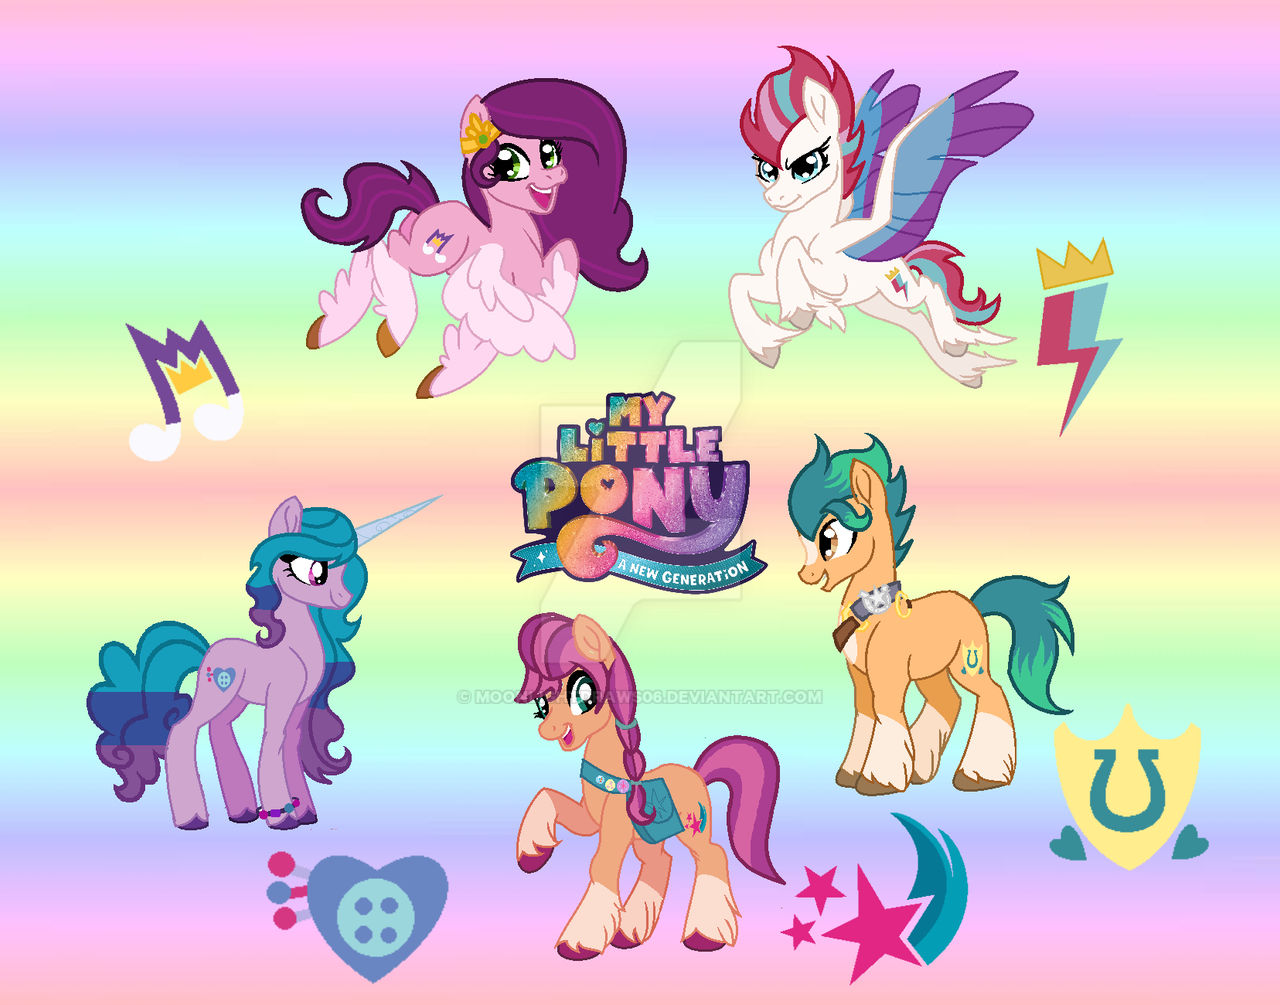 G5 Fan Art) My Pony : A New Generation by MoonLightDraws06 on DeviantArt